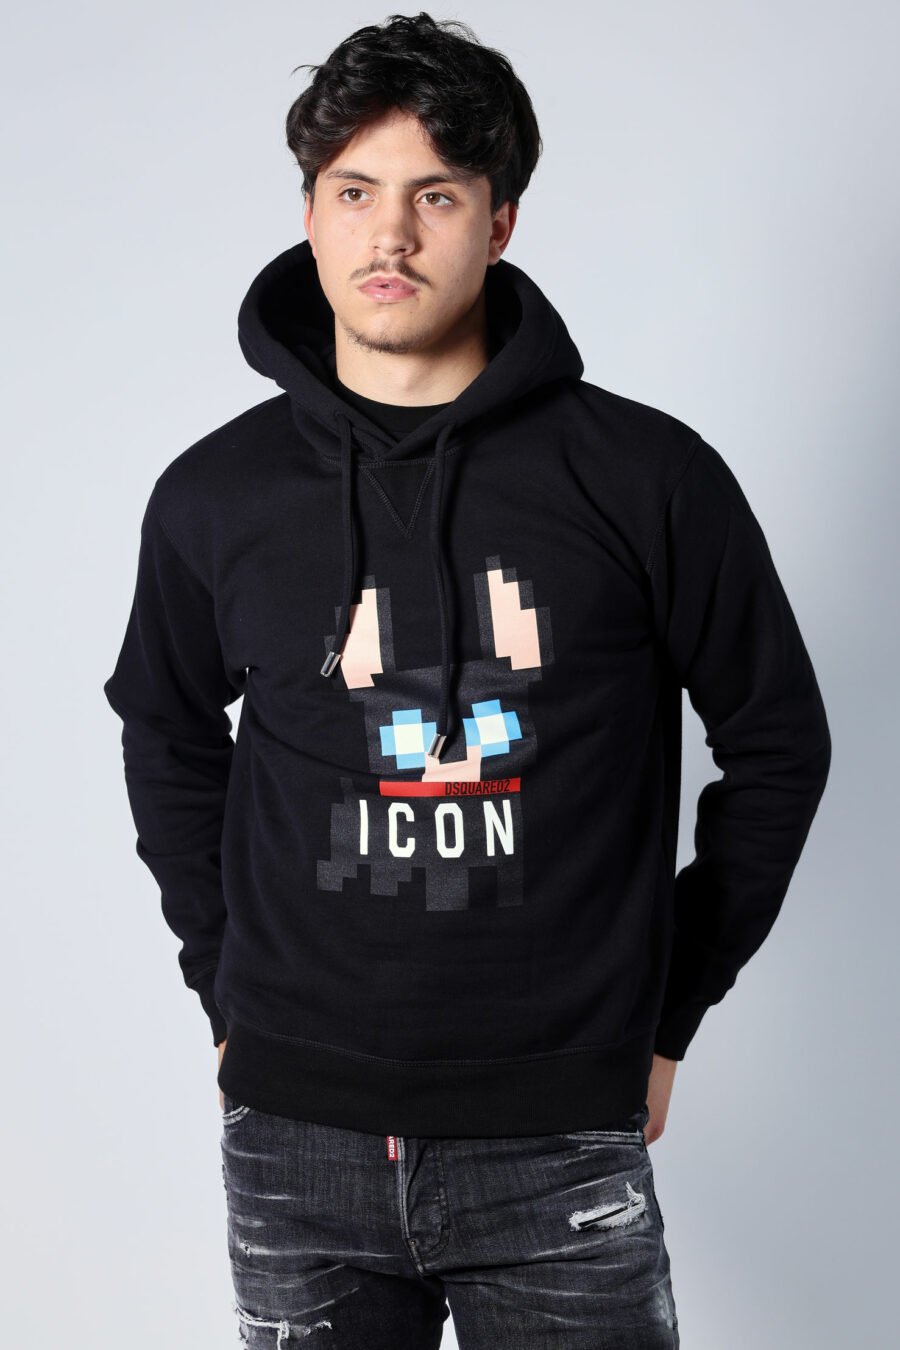 Black hooded sweatshirt with "pixeled" dog logo - Untitled Catalog 05683